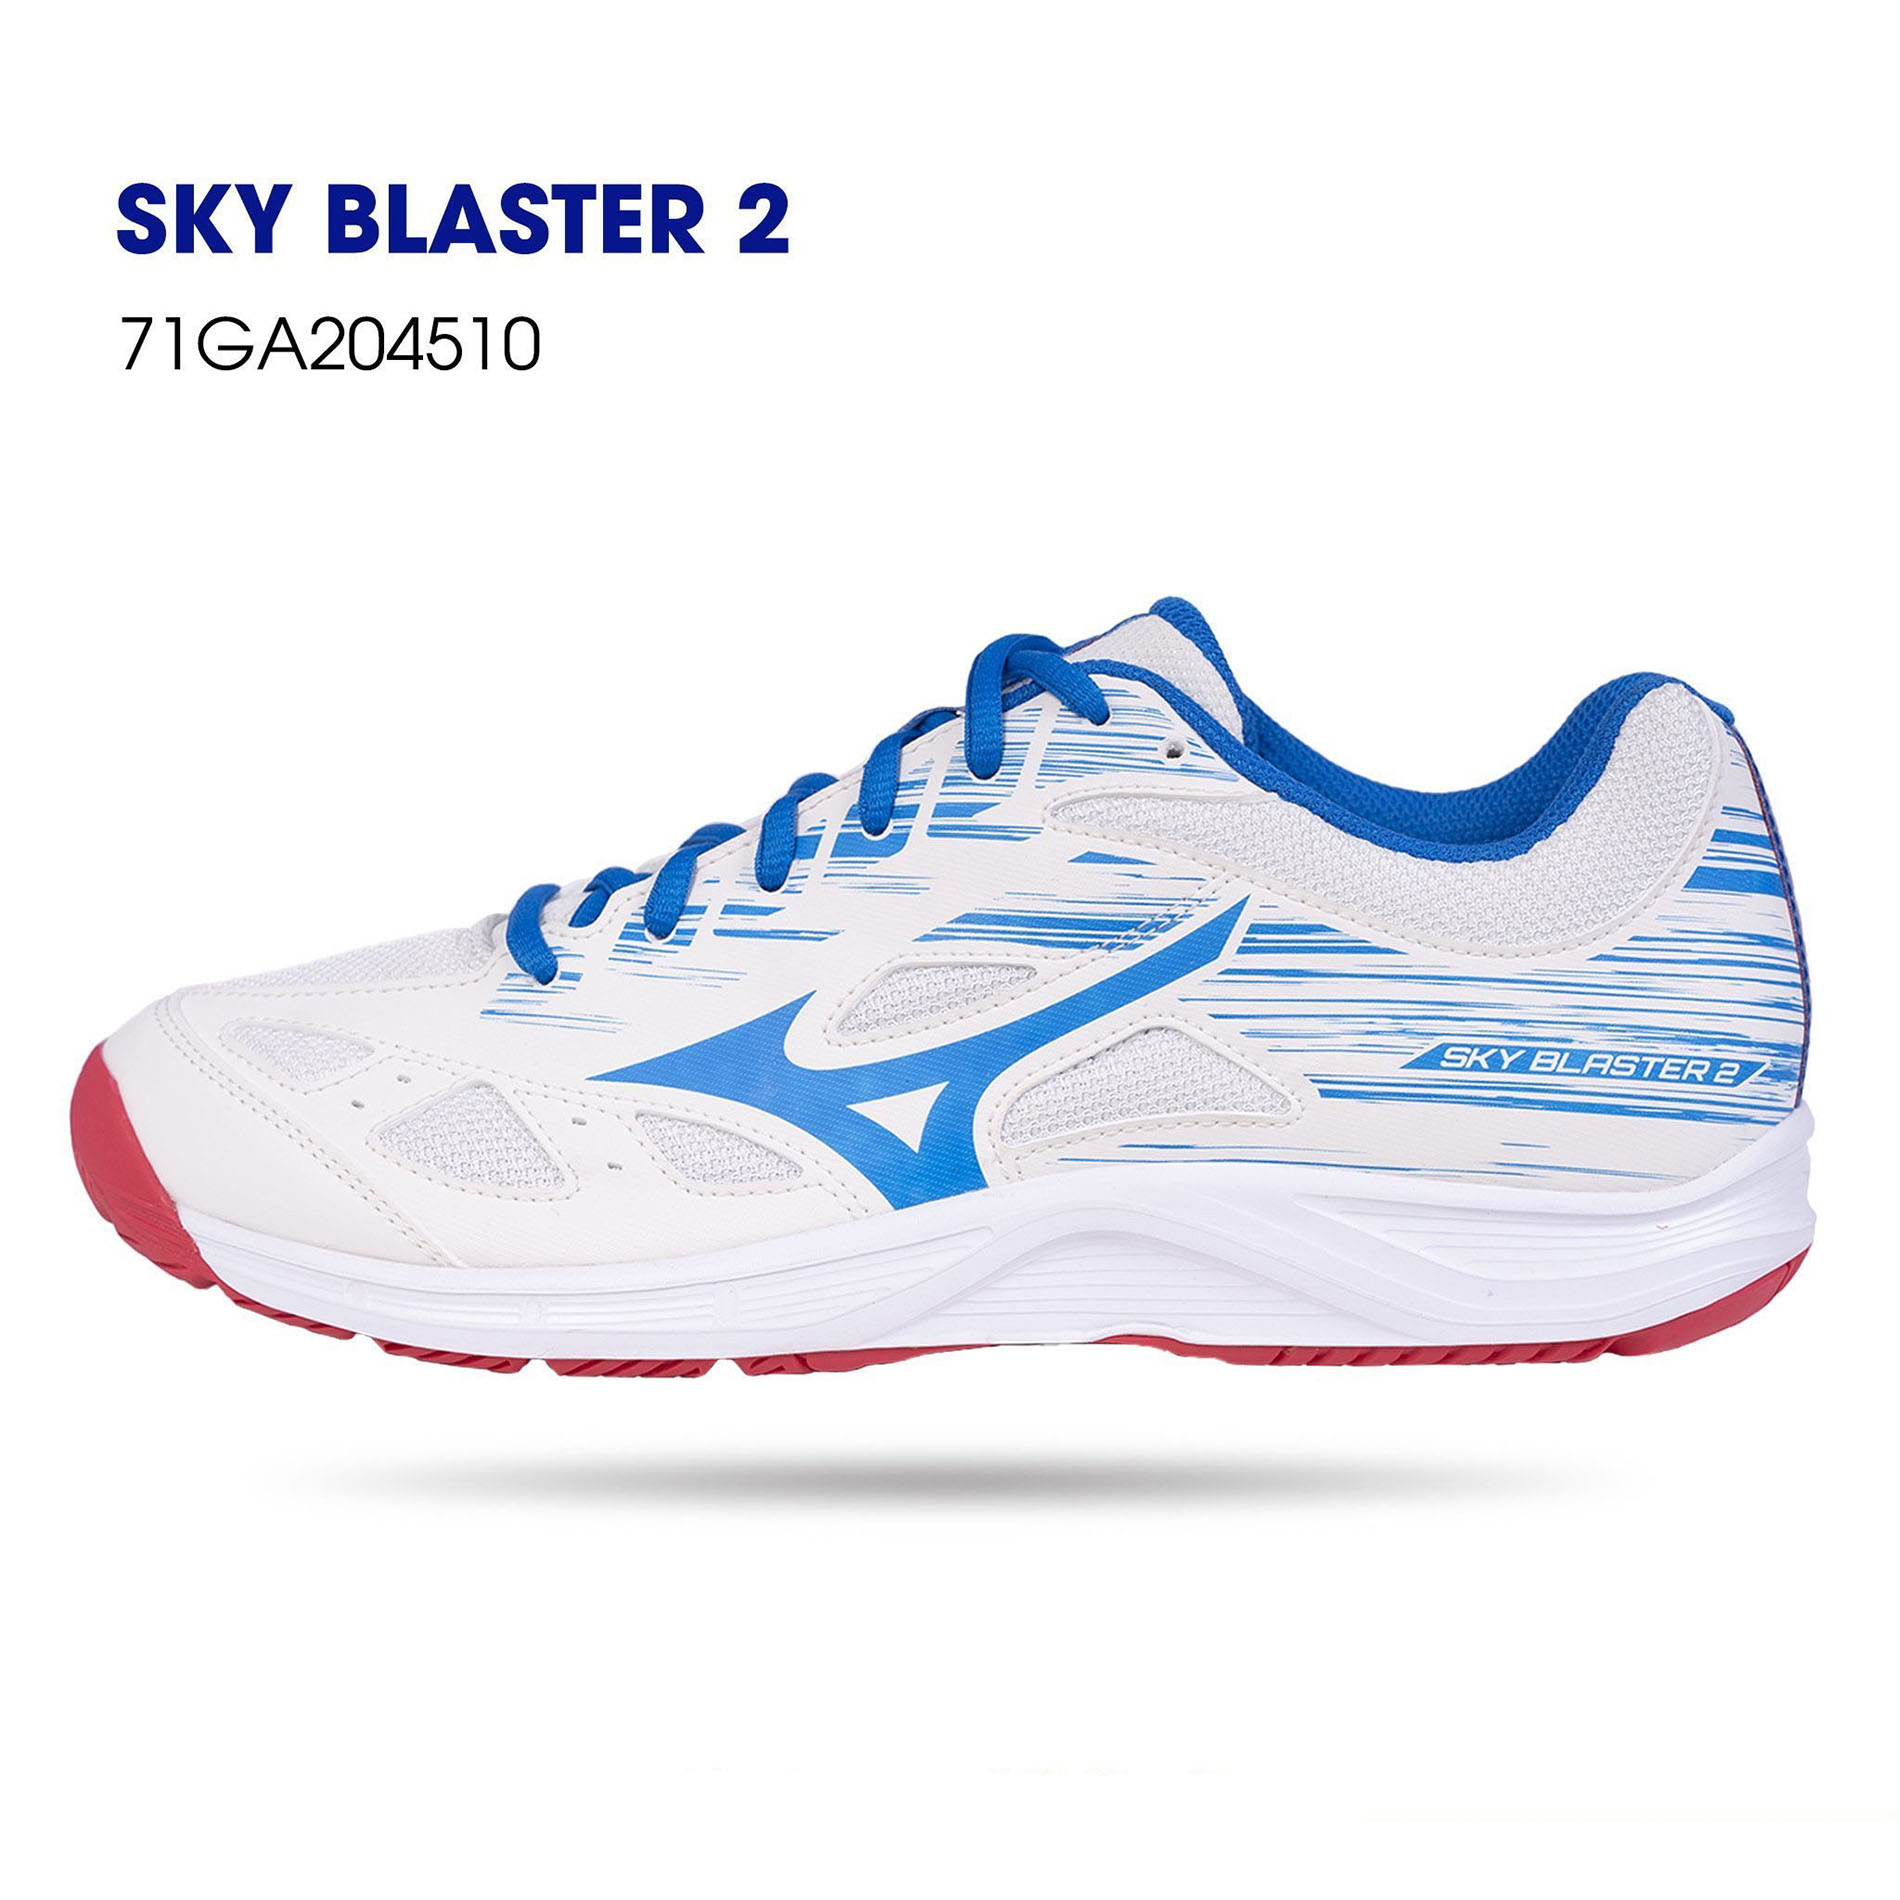 Giày cầu lông Mizuno nam chính hãng Sky Blaster 2 mẫu mới có 2 màu lựa chọn